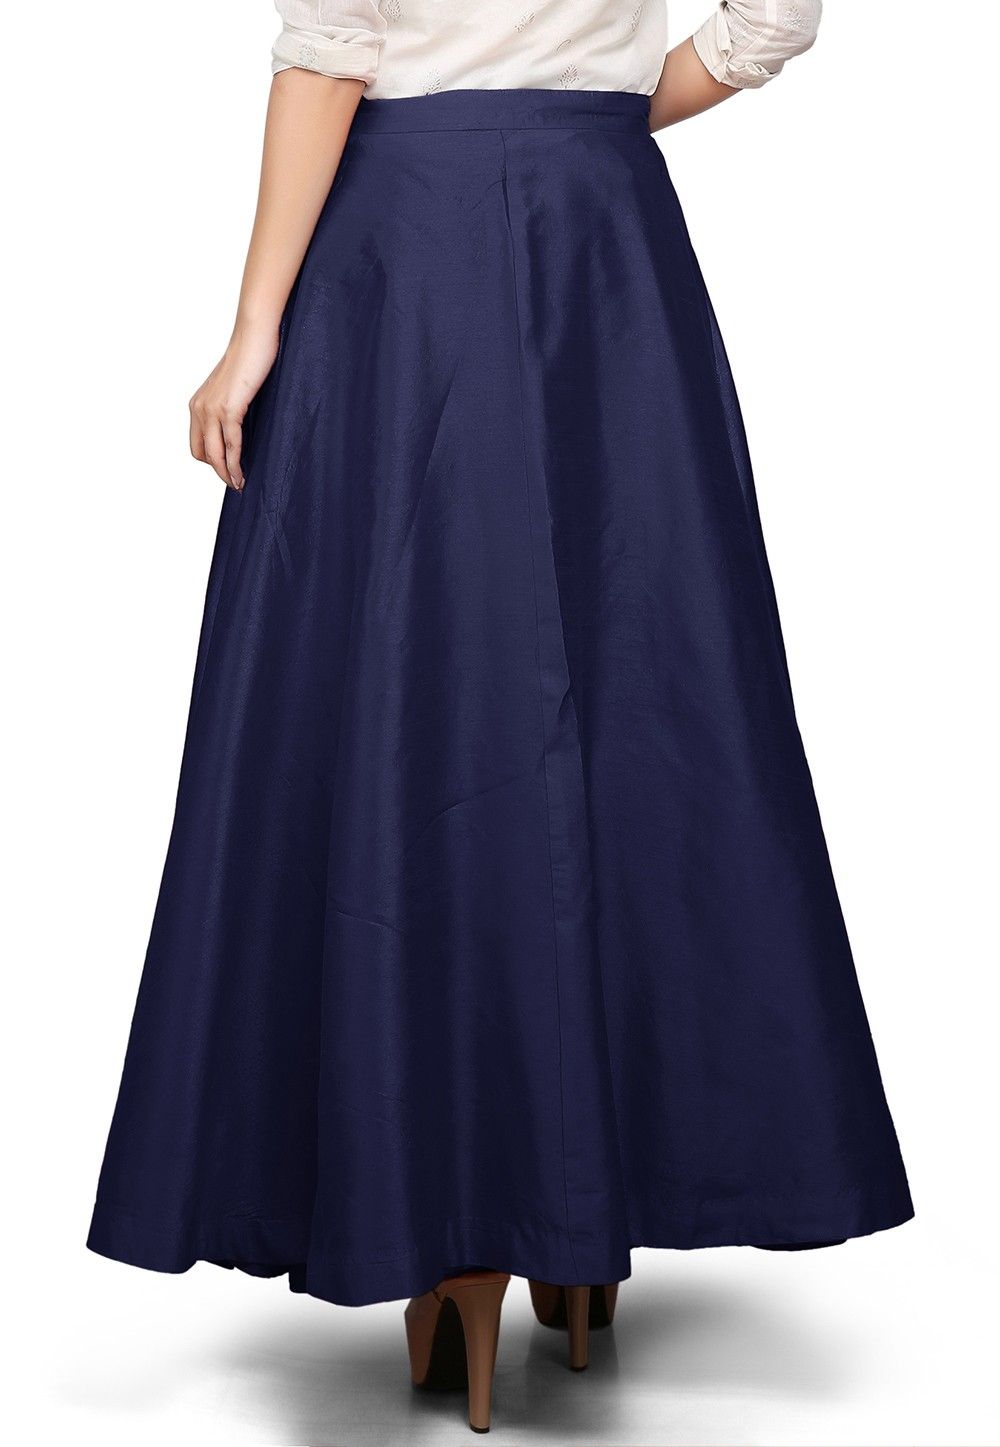 Buy Plain Dupion Silk Long Skirt in Navy Blue Online : THU412 - Utsav ...